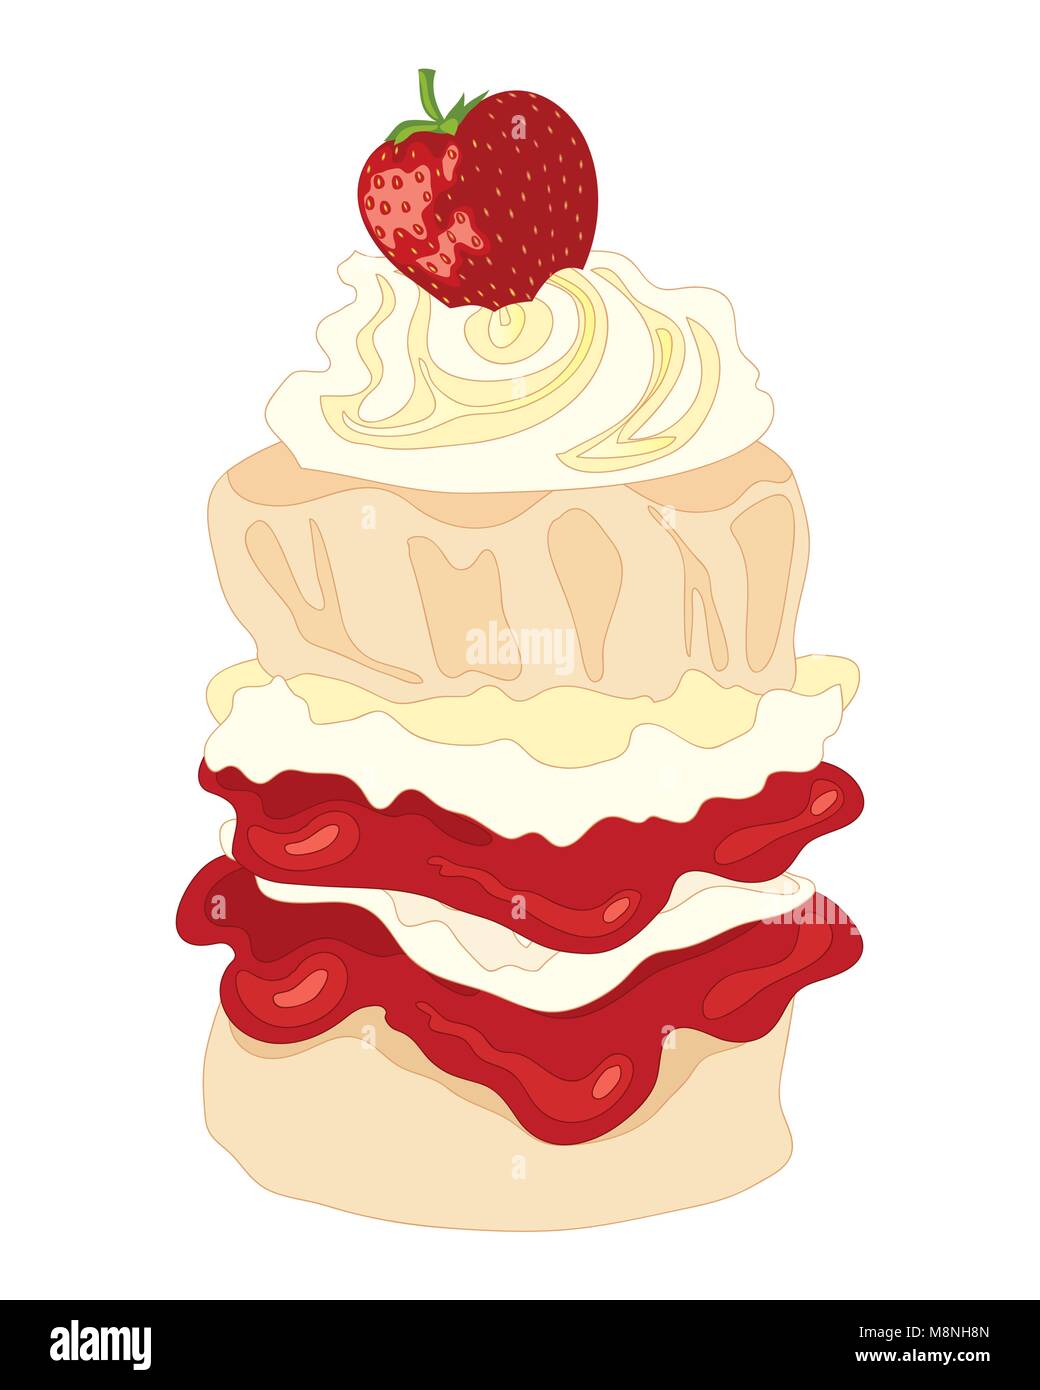 Un vecteur illustration au format eps tall et crème avec des couches de scone confiture de remplissage d'un tourbillon de crème et une fraise sur le dessus avec un fond blanc Illustration de Vecteur